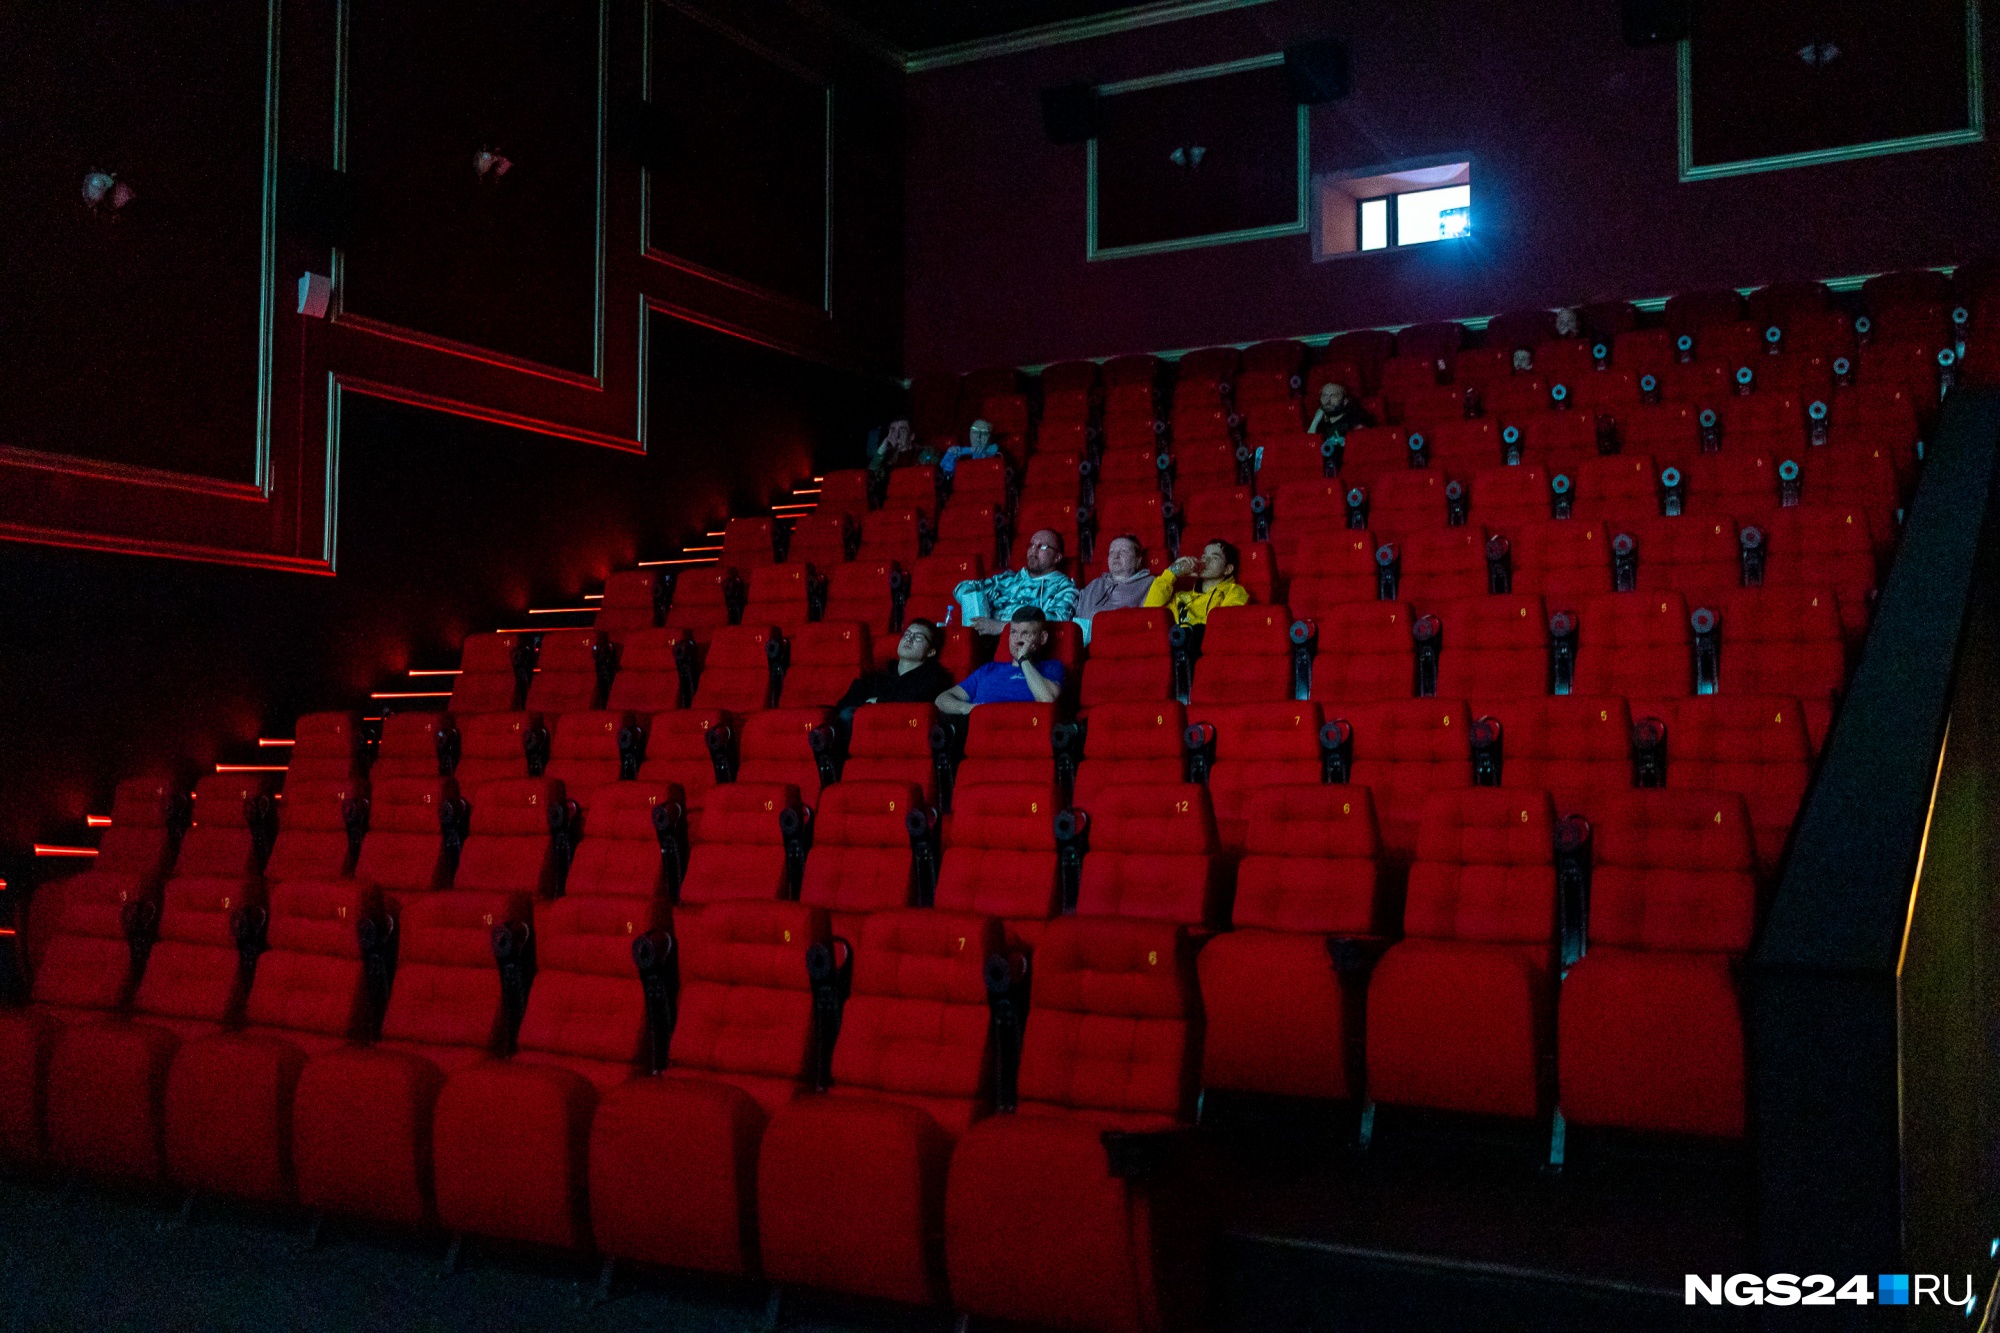 Воздух красноярск в кинотеатрах